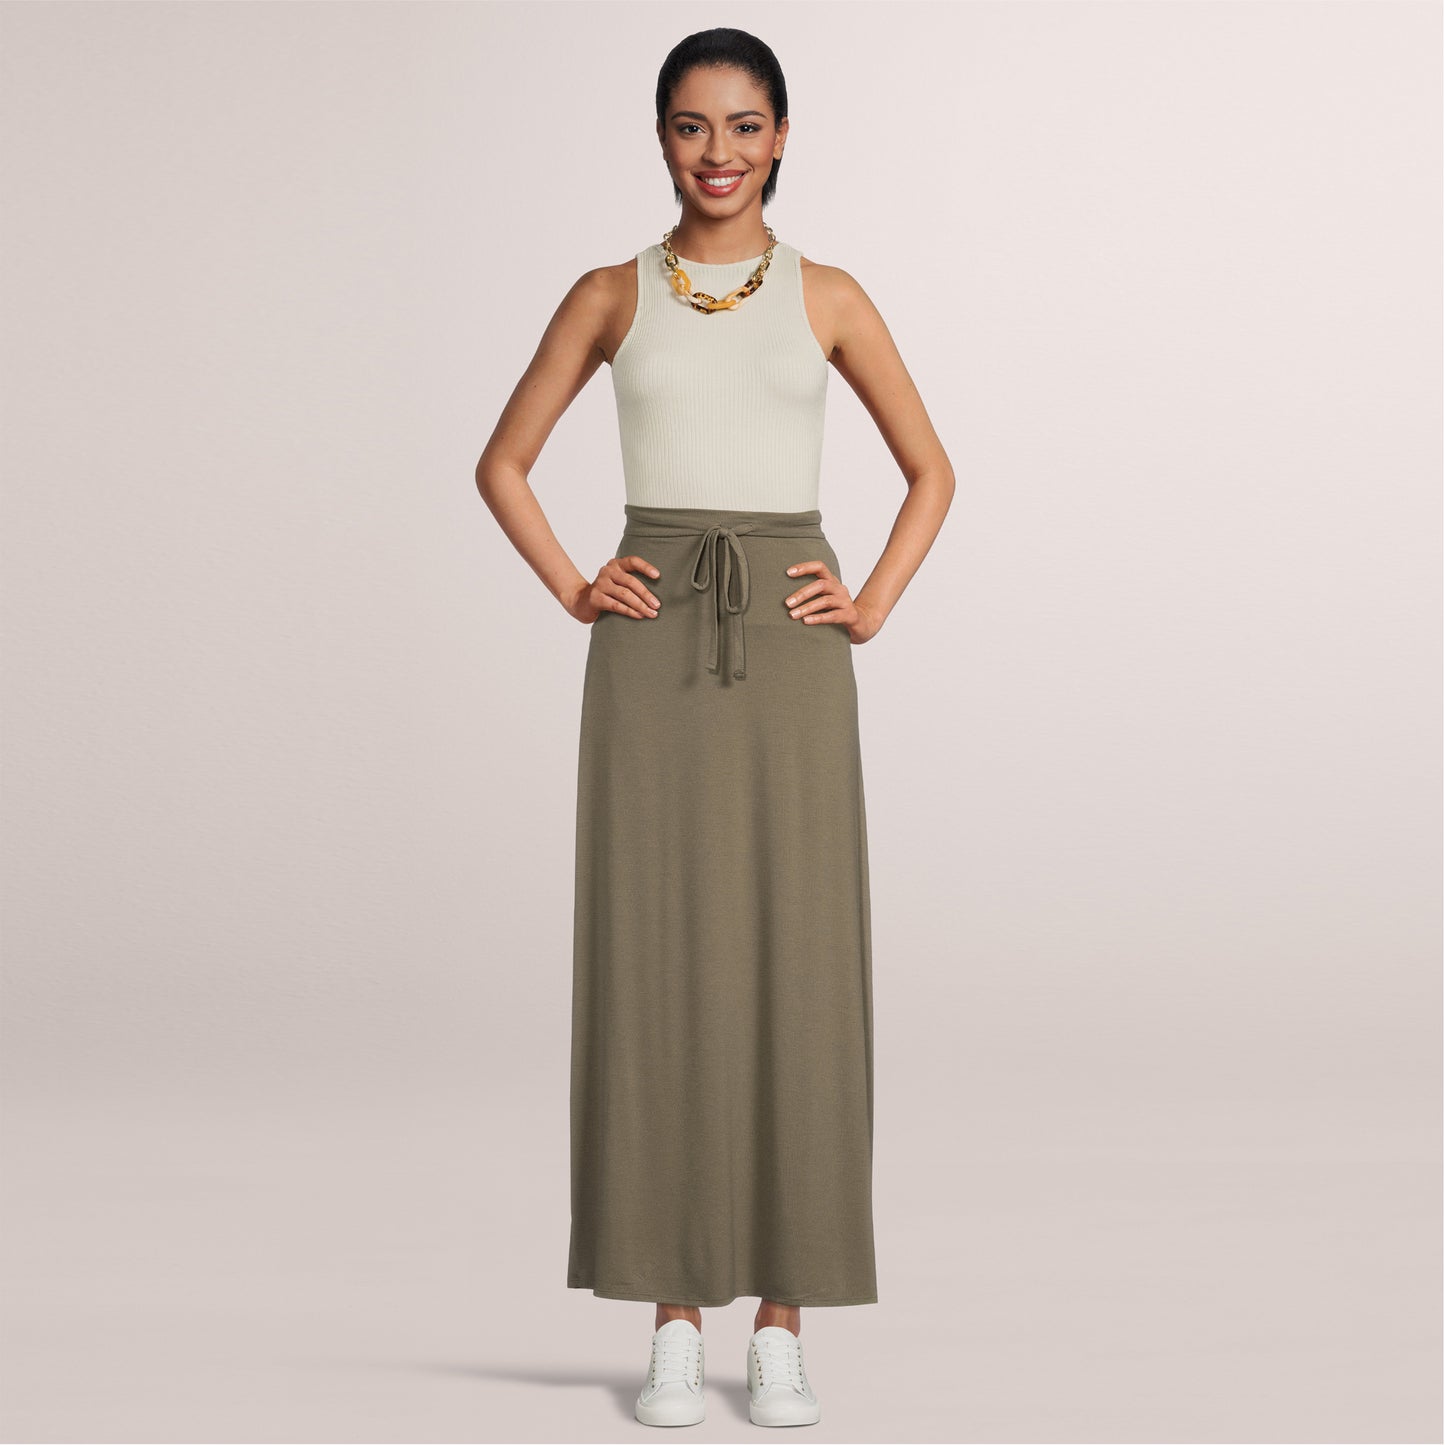 Women's Maxi Long Skirt Drawstring Waist Pockets Soft Comfort Fabric Green